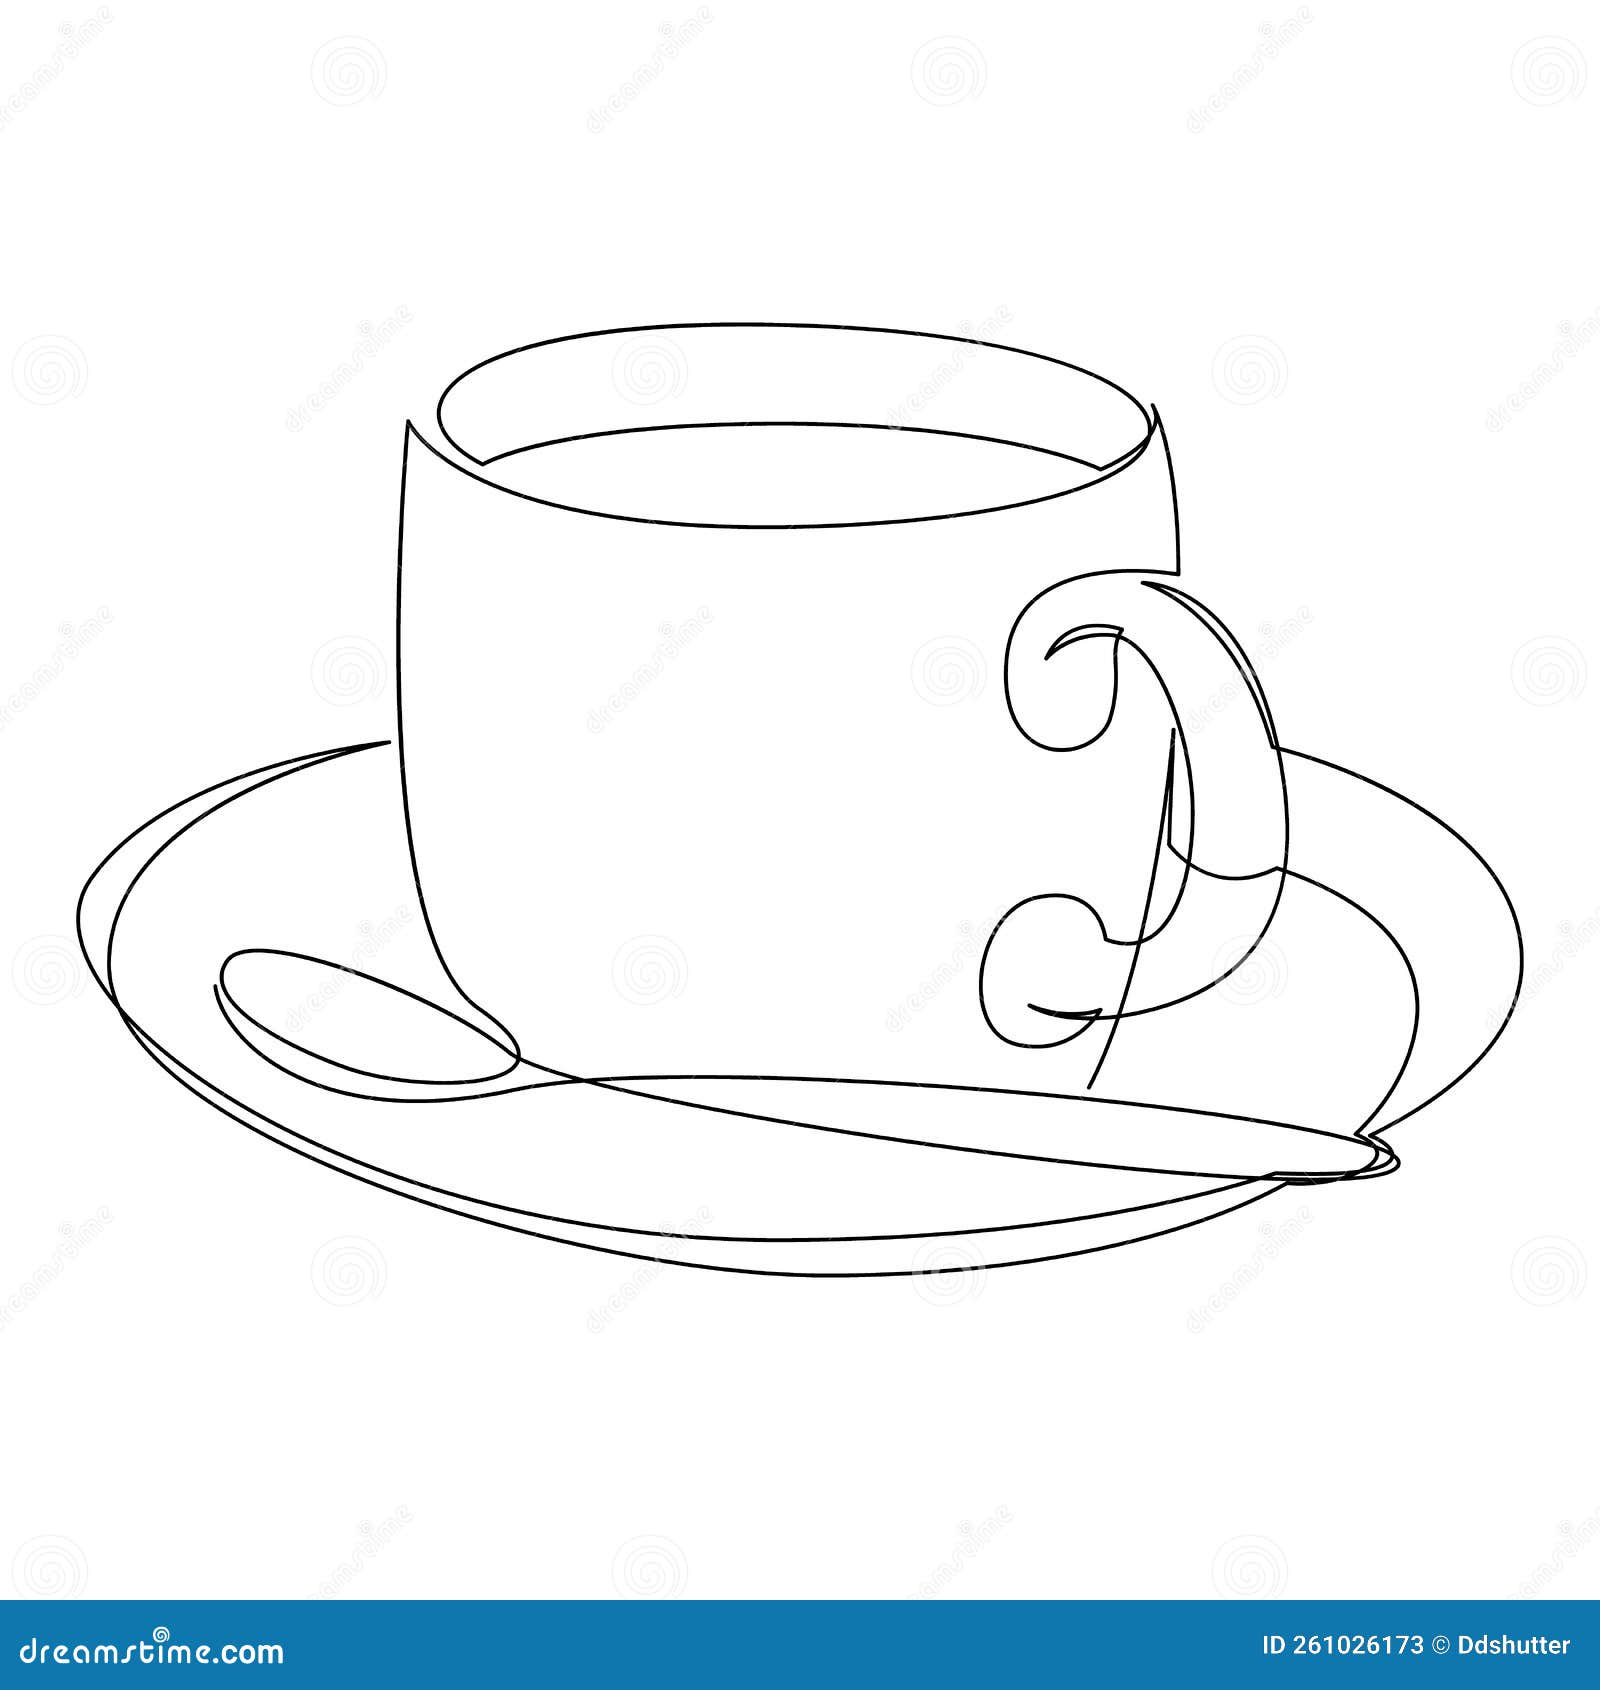 Inktober 11 — cup of tea